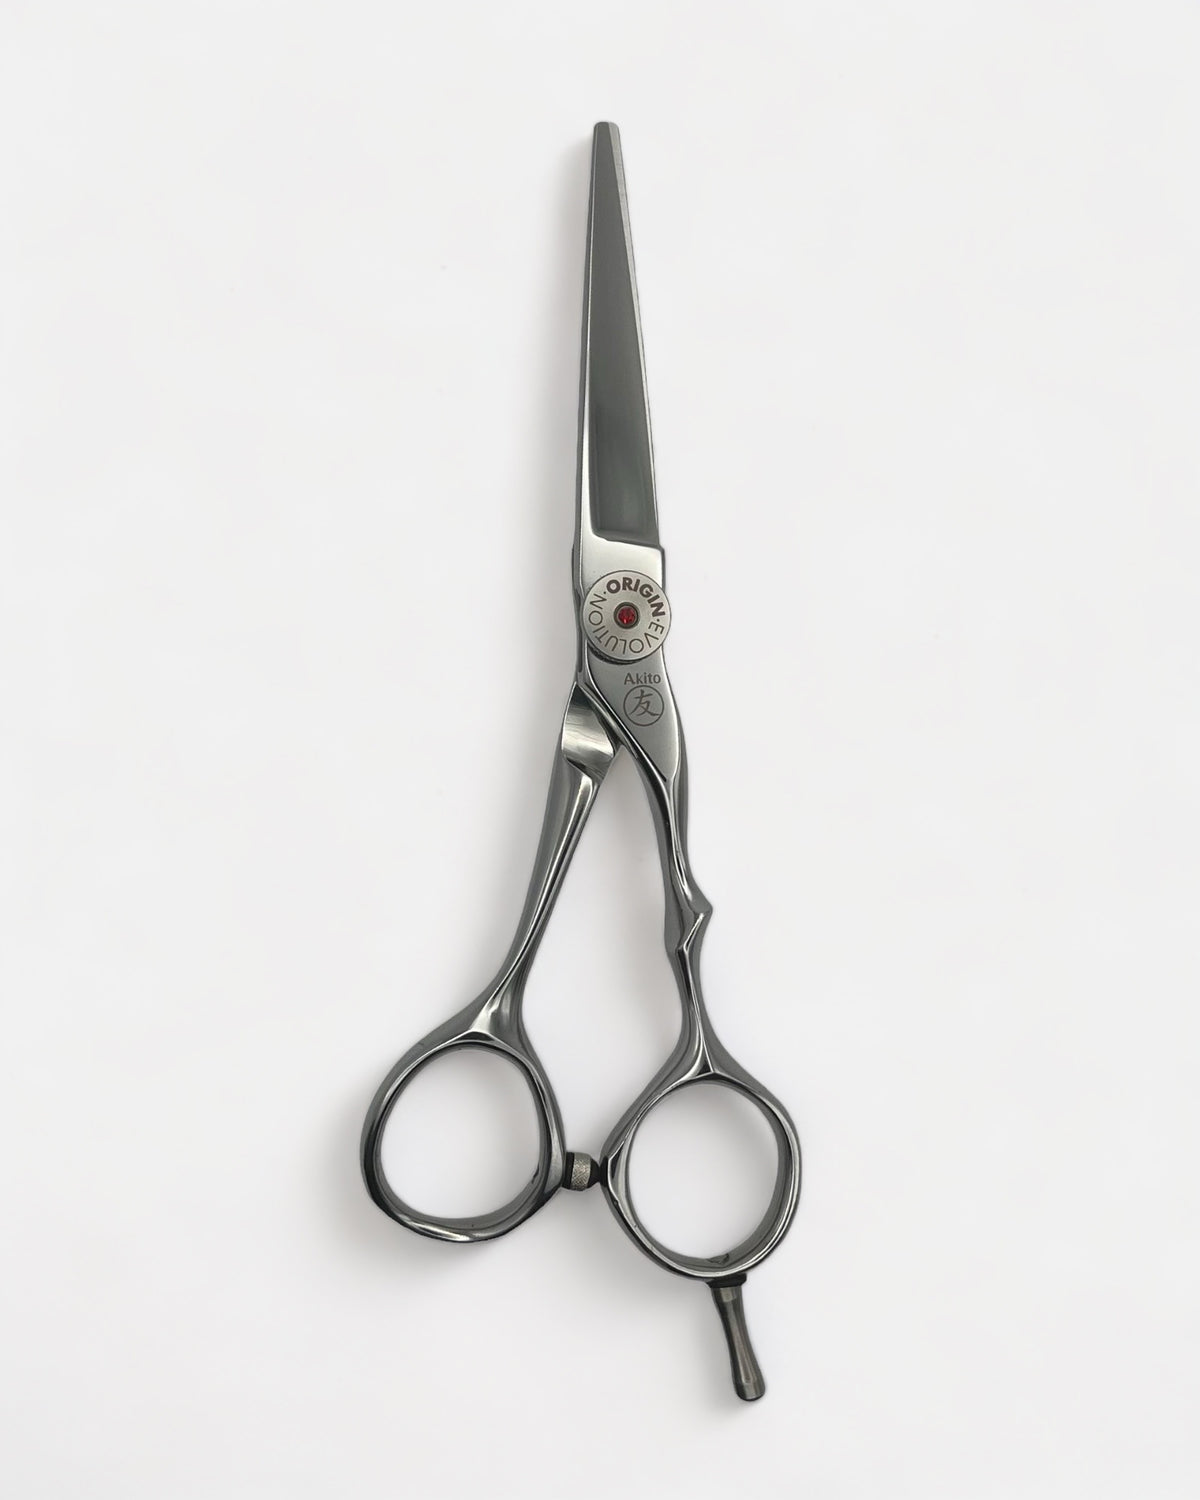 Evolve Hairdresser Scissors on grey